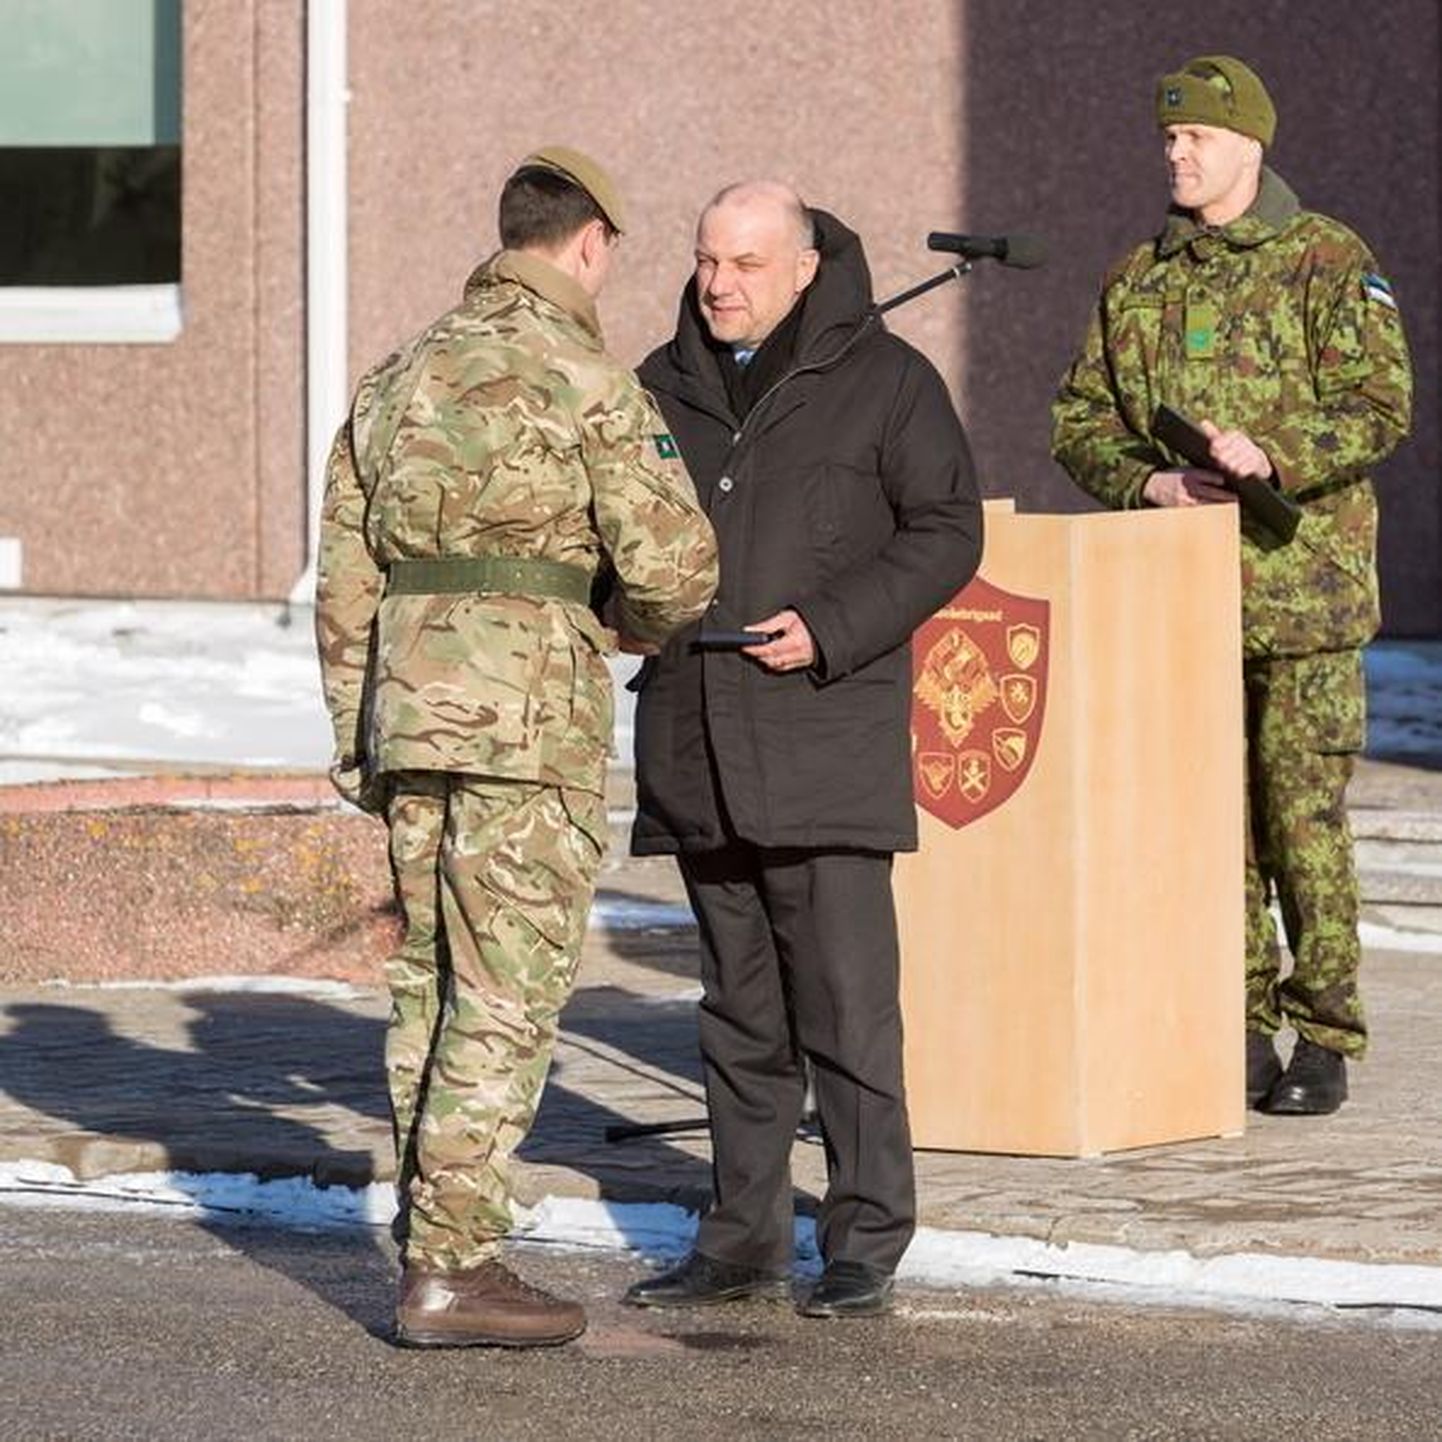 Kaitseminister Jüri Luik Tapal missioonimedaleid jagamas.